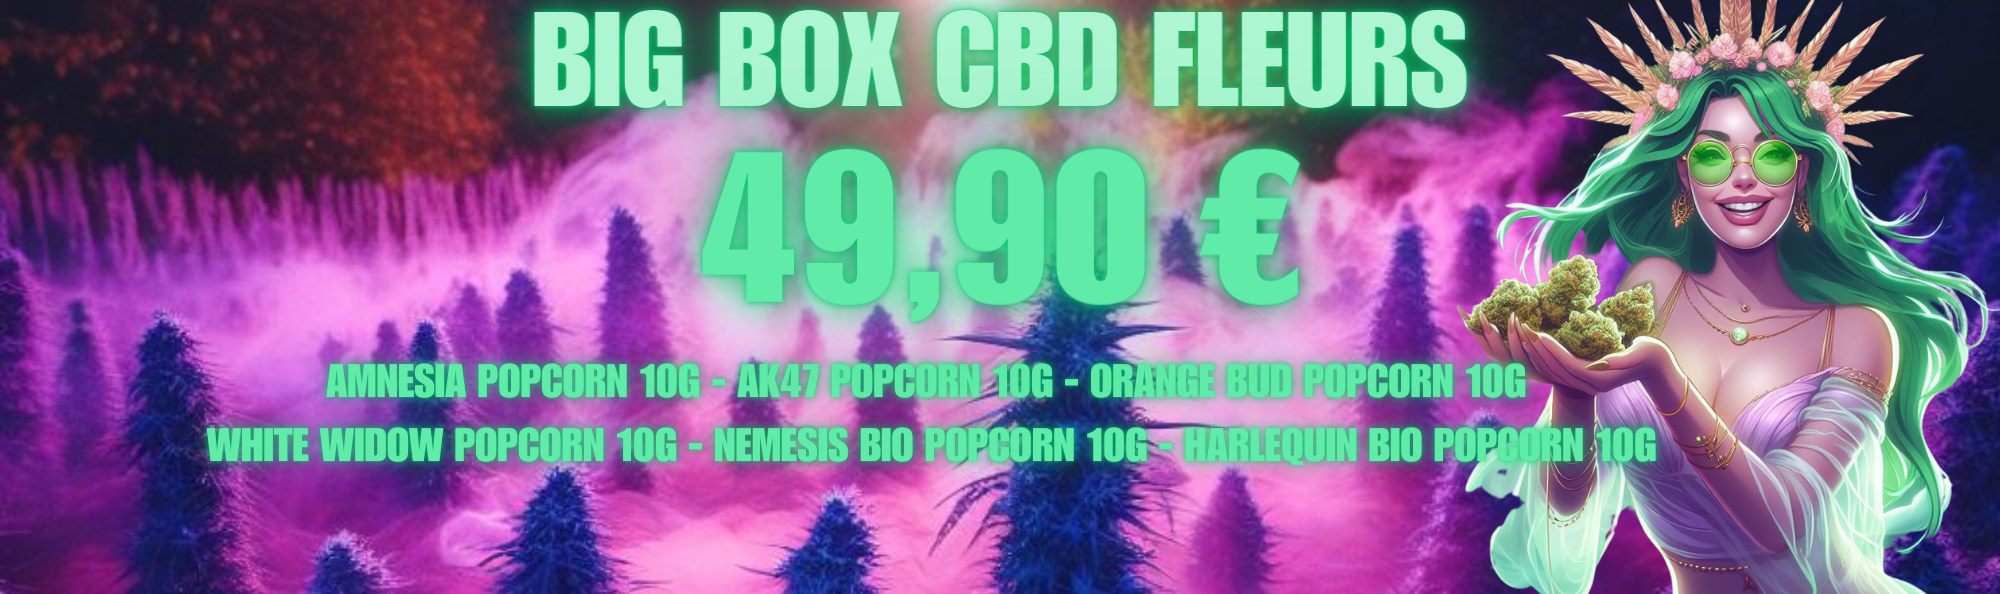 Profitez de la BIG BOX CBD FLEURS seulement à 49,90 euros